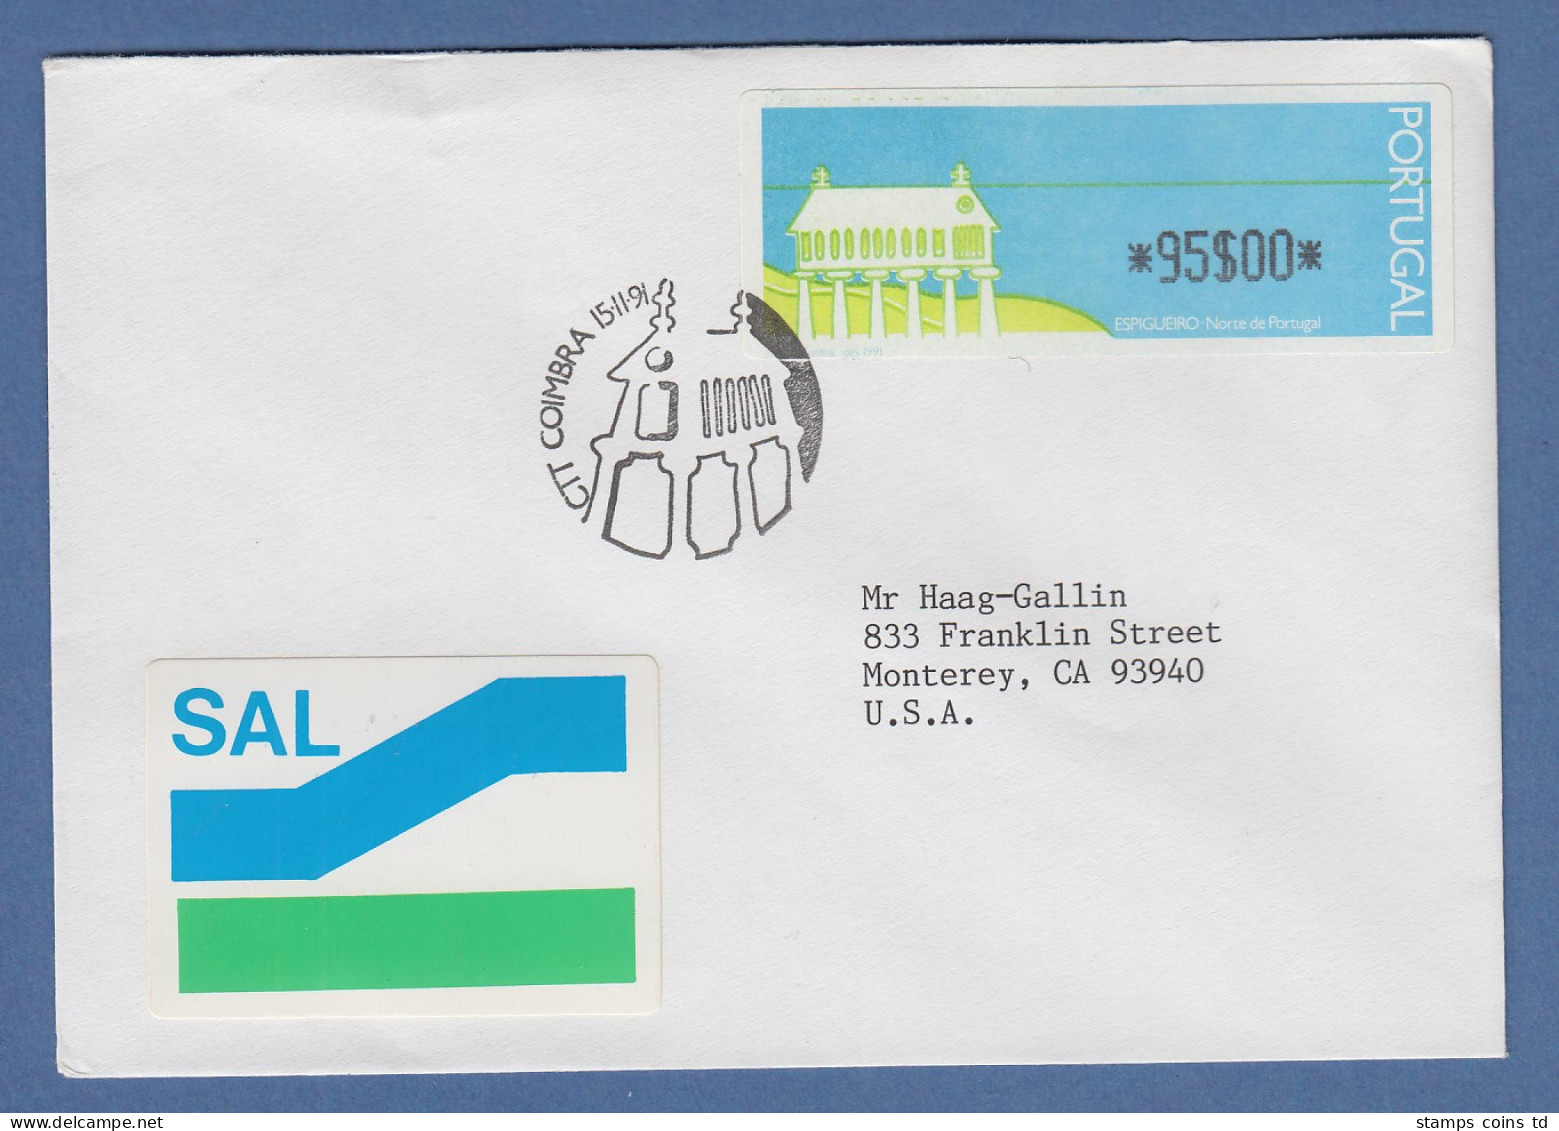 Portugal 1991 ATM Espigueiro Mi.-Nr. 3 Wert 95$00 Auf SAL -> USA ET-O Coimbra - Machine Labels [ATM]